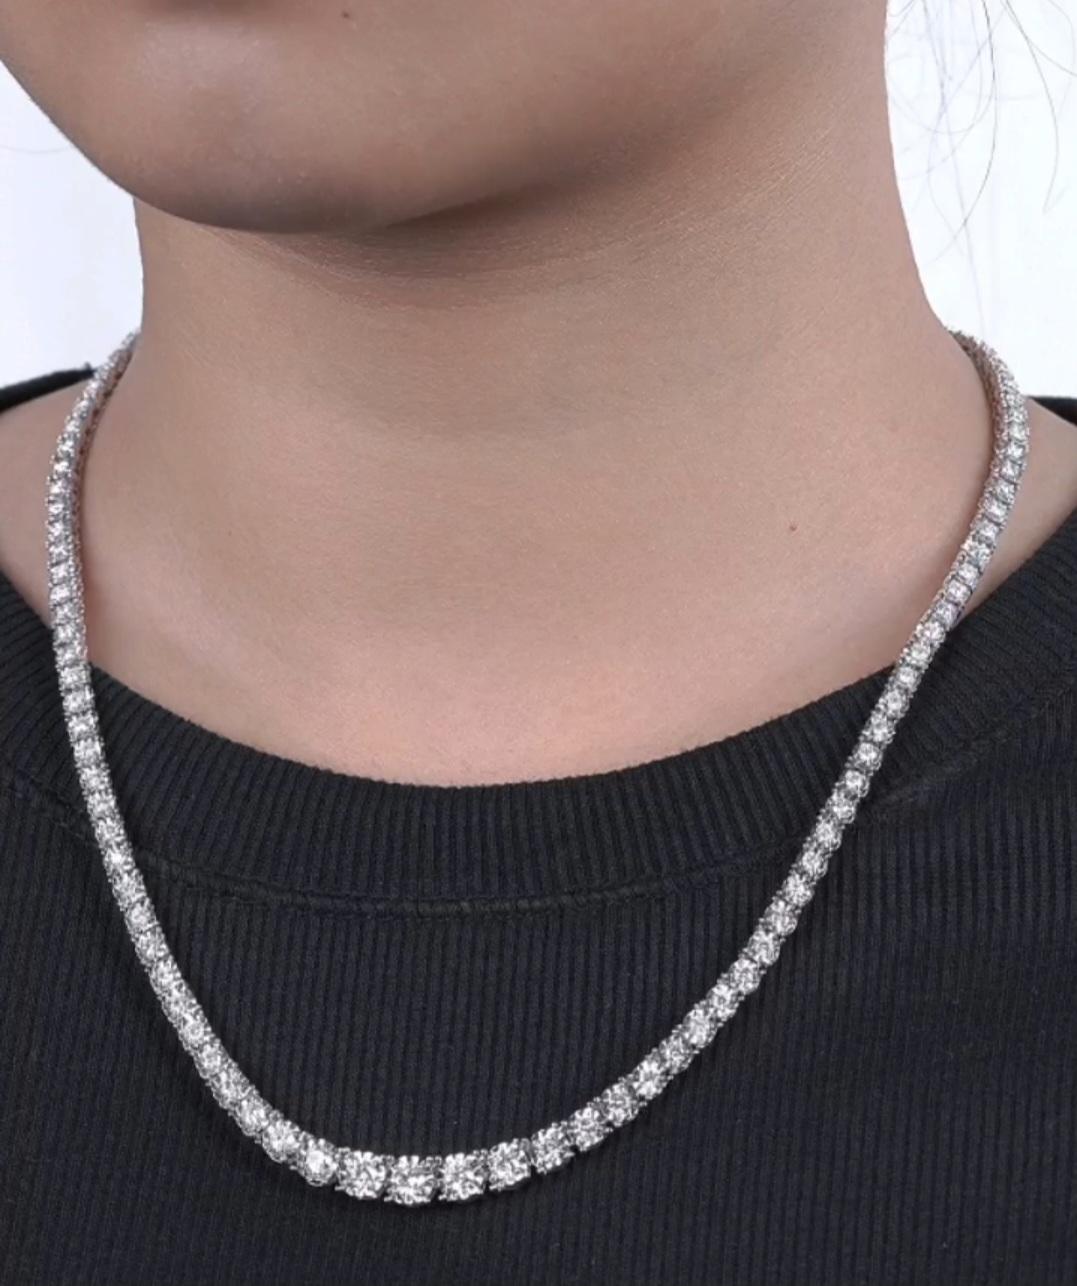 Der folgende Artikel, den wir anbieten, ist eine seltene wichtige Radiant 18KT Gold Rare Gorgeous Fancy Diamond Necklace. Halskette besteht aus einem wunderschönen Array von Fancy mit Diamanten abgestuft!!! T.C.W. Fast 6 CTS!!! Diese wunderschöne